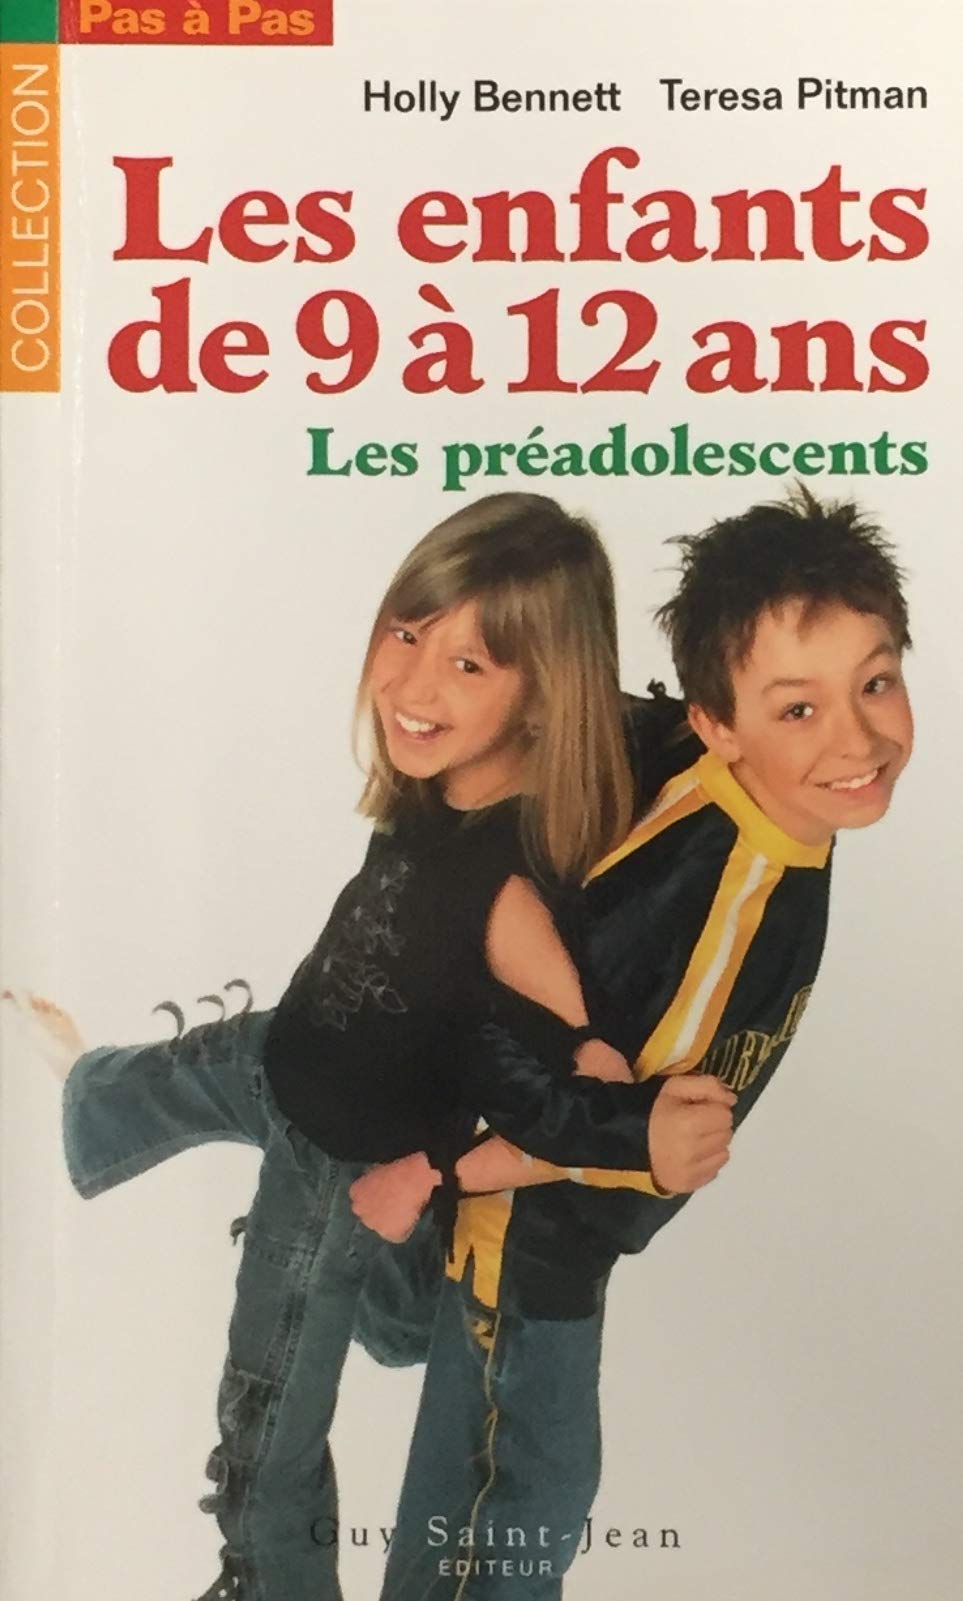 Livre ISBN 2894552122 Pas-à-Pas : Les enfants de 9 à 12 ans : Les préadolescents (Holly Bennett)